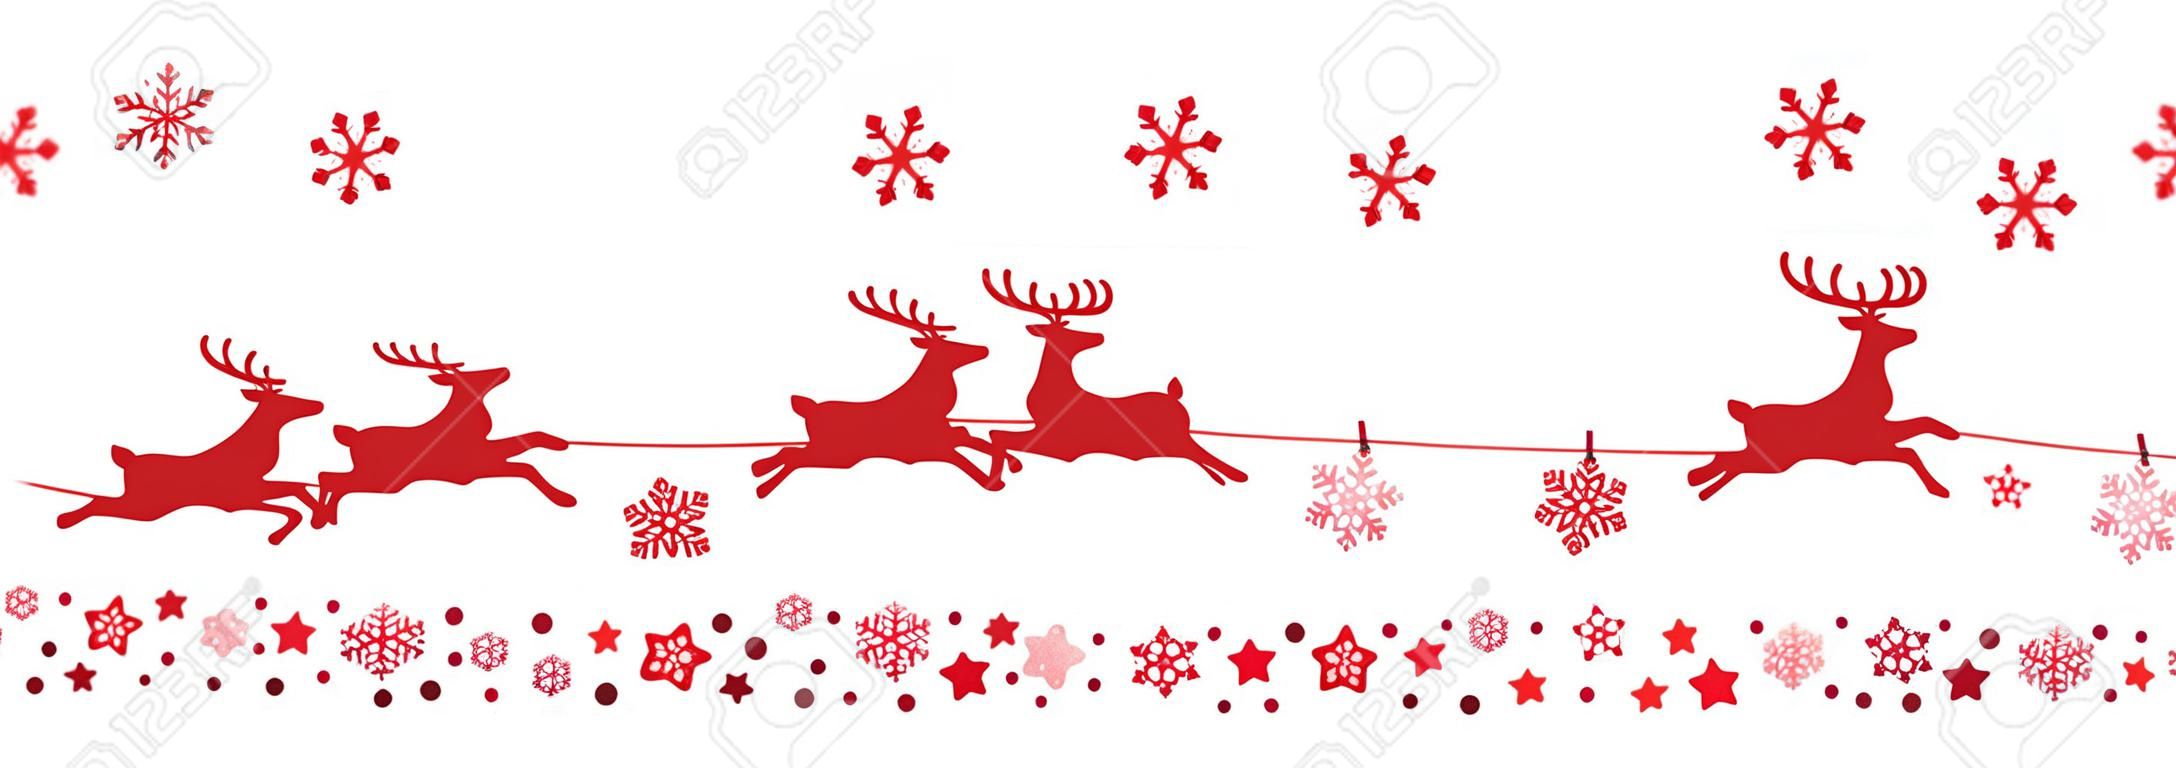 santa sleigh reindeer flying snowflakes red silhouette